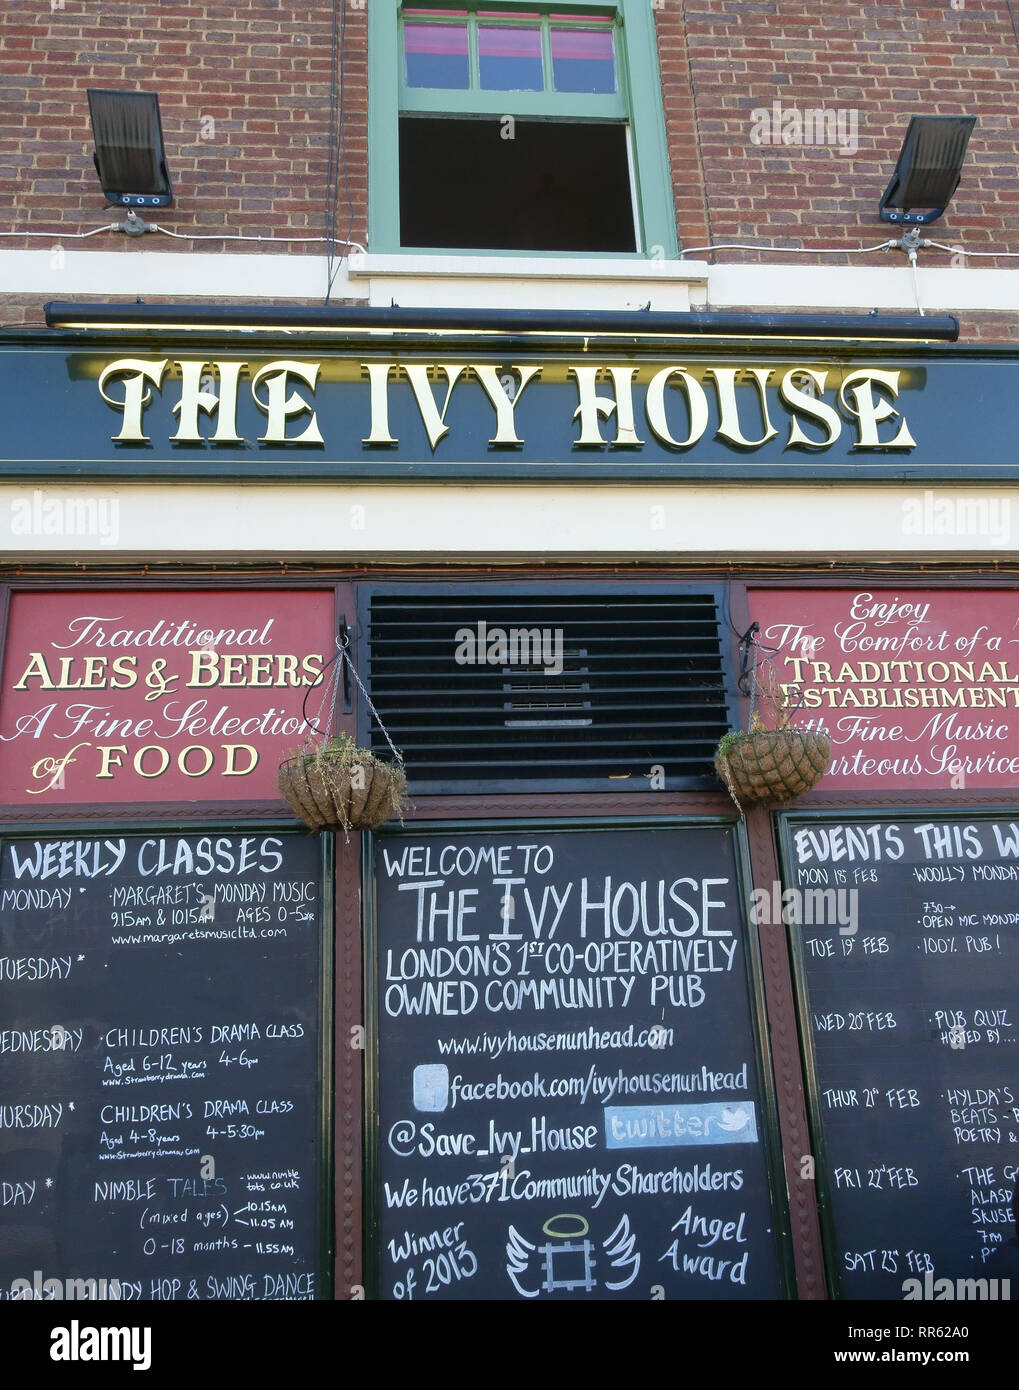 La hiedra Casa en Nunhead, South East London, Londres es la primera comunidad de propiedad cooperativa pub Foto de stock